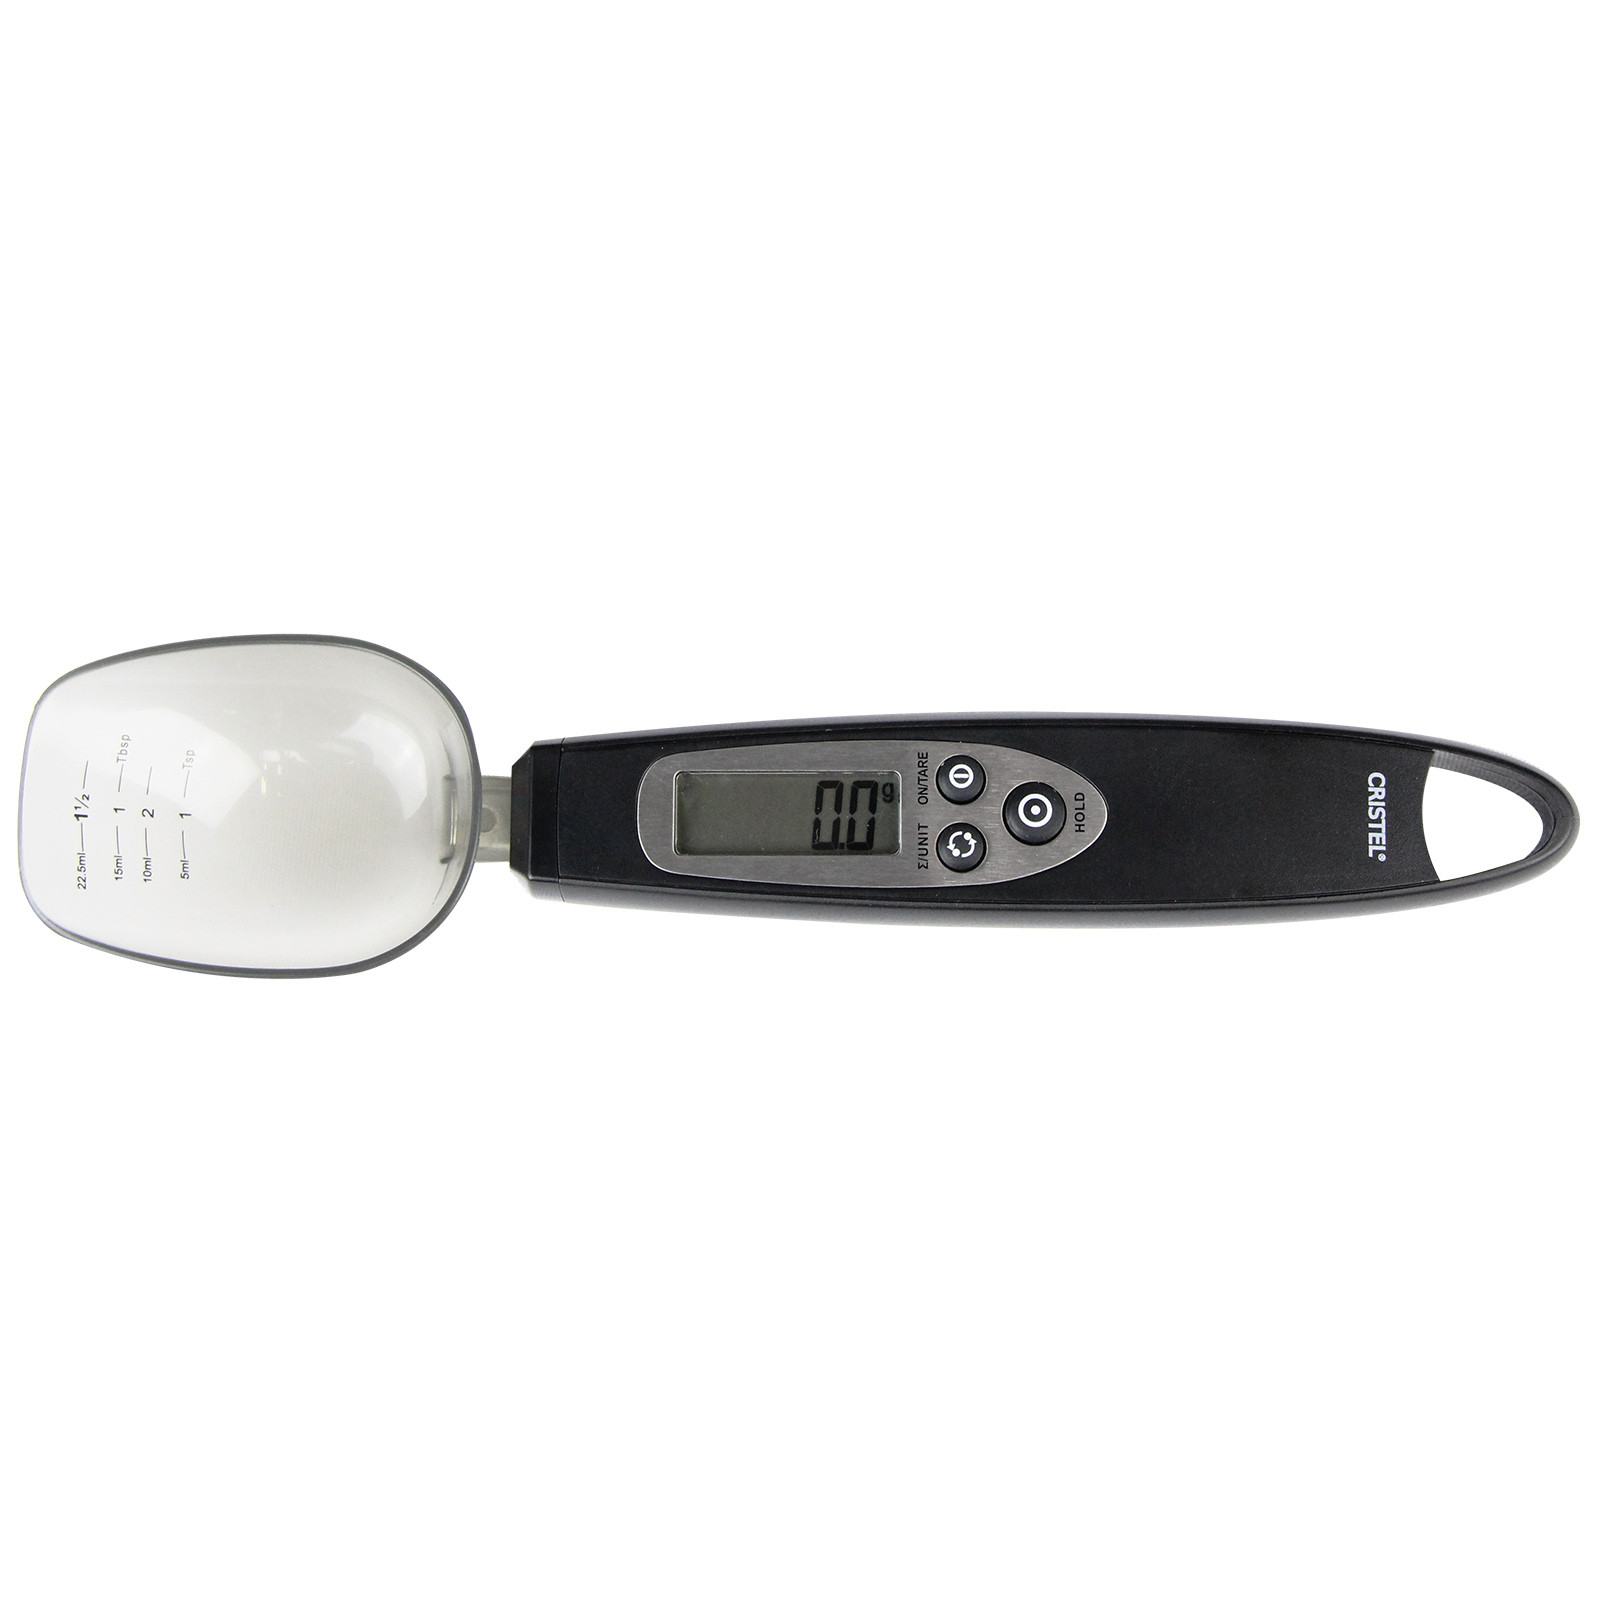 Thermomètre digital de cuisson - POC, Thermomètre et balances - Cristel